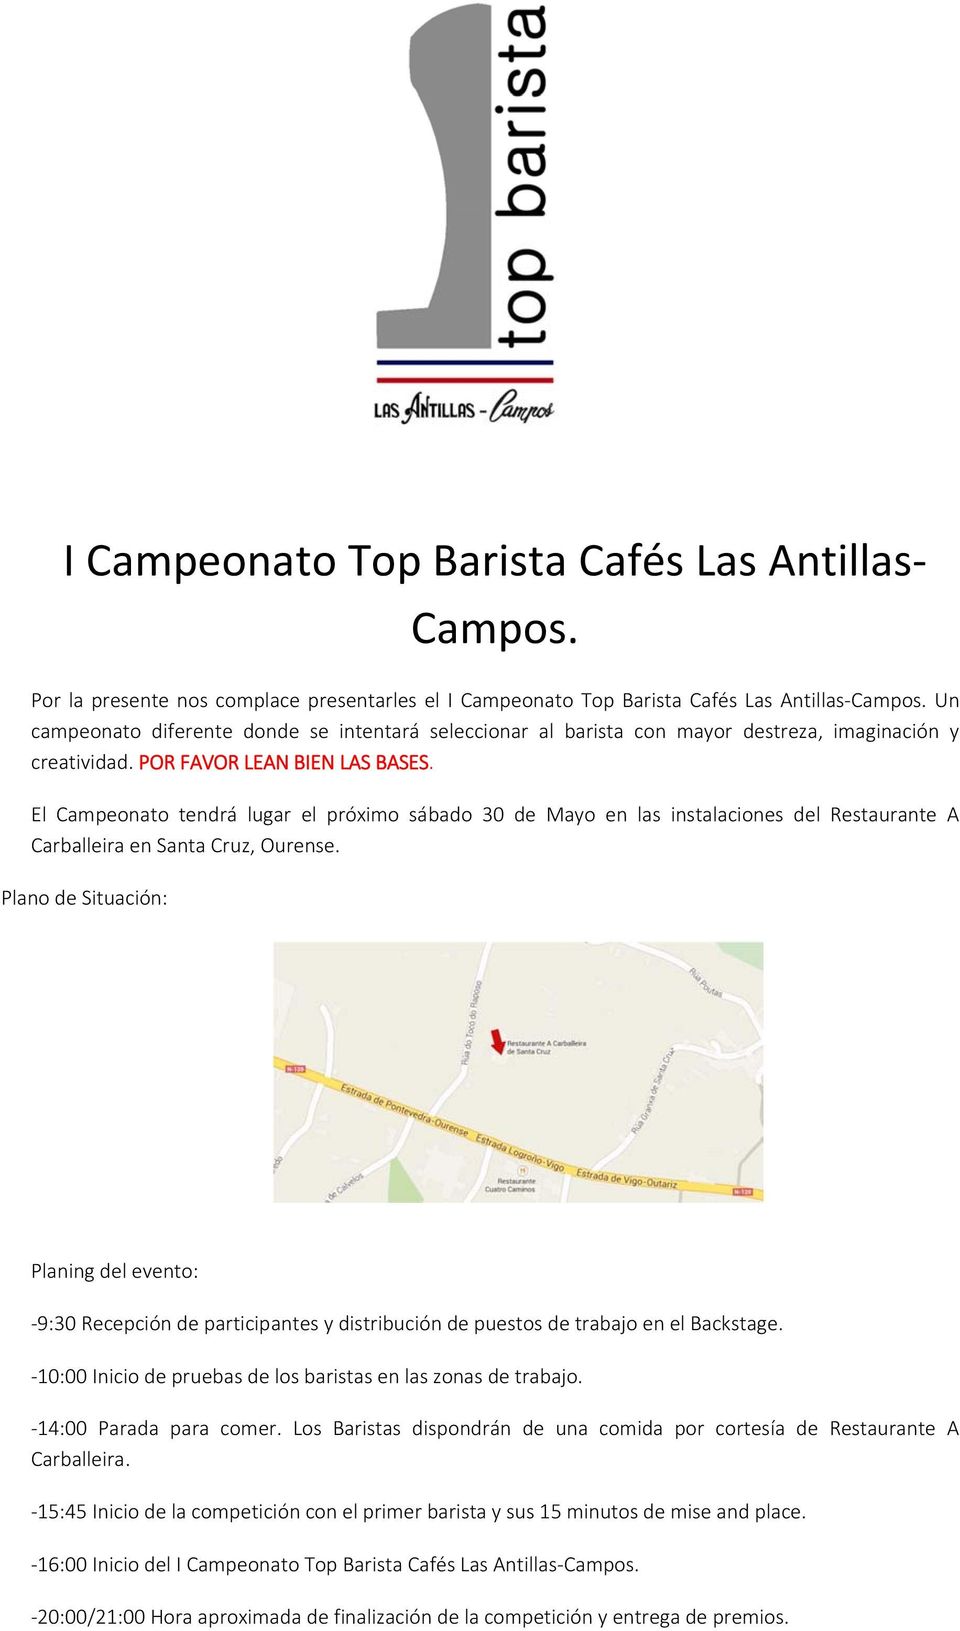 El Campeonato tendrá lugar el próximo sábado 30 de Mayo en las instalaciones del Restaurante A Carballeira en Santa Cruz, Ourense.